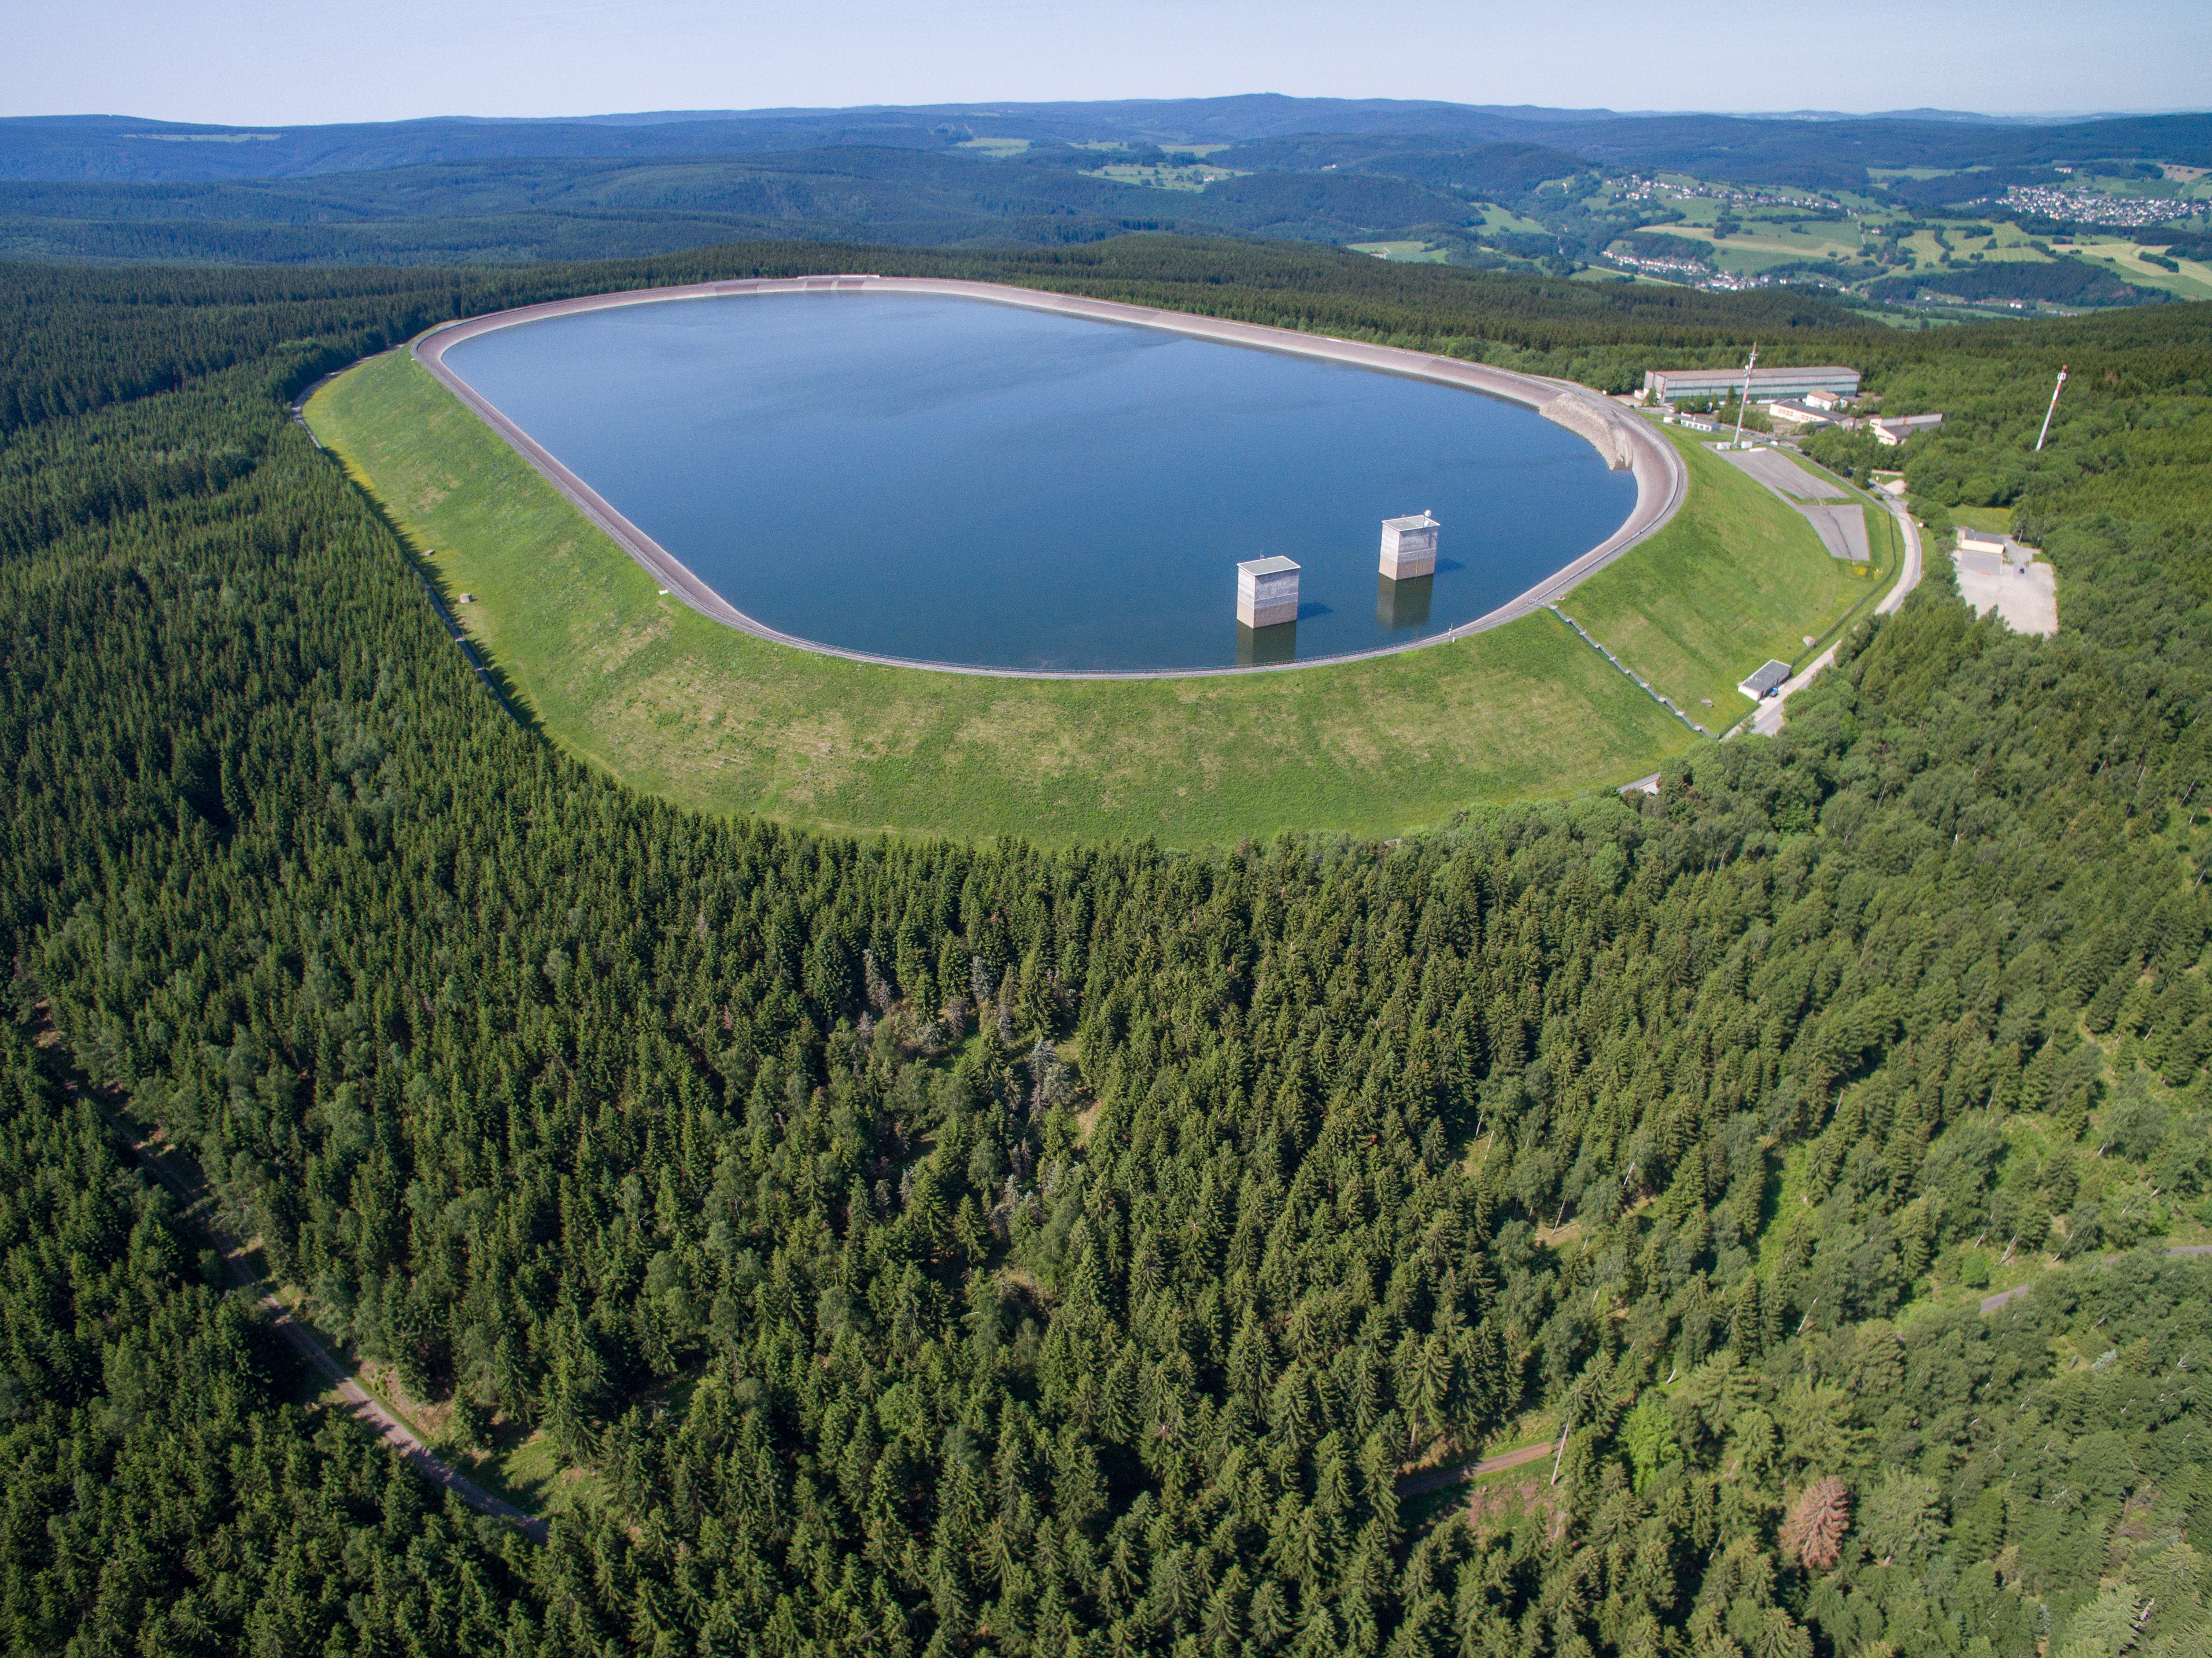 Szivattyús-tározós erőmű felső víztározója a németországi Markersbach-ban